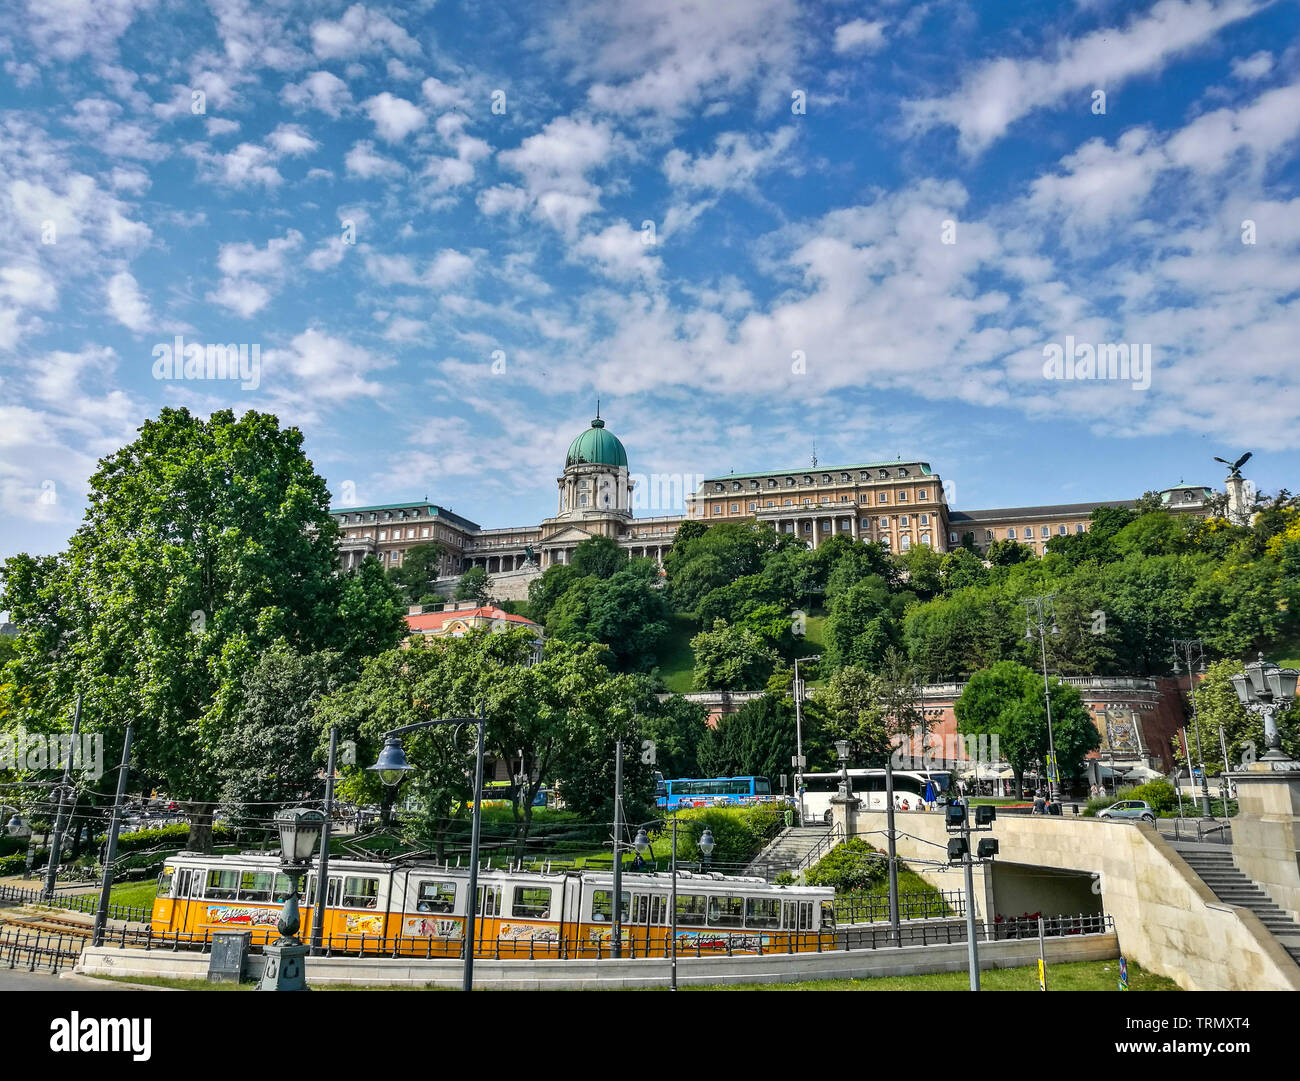 Château de Buda avec tramway jaune sur une journée ensoleillée. Budapest - Hongrie Banque D'Images